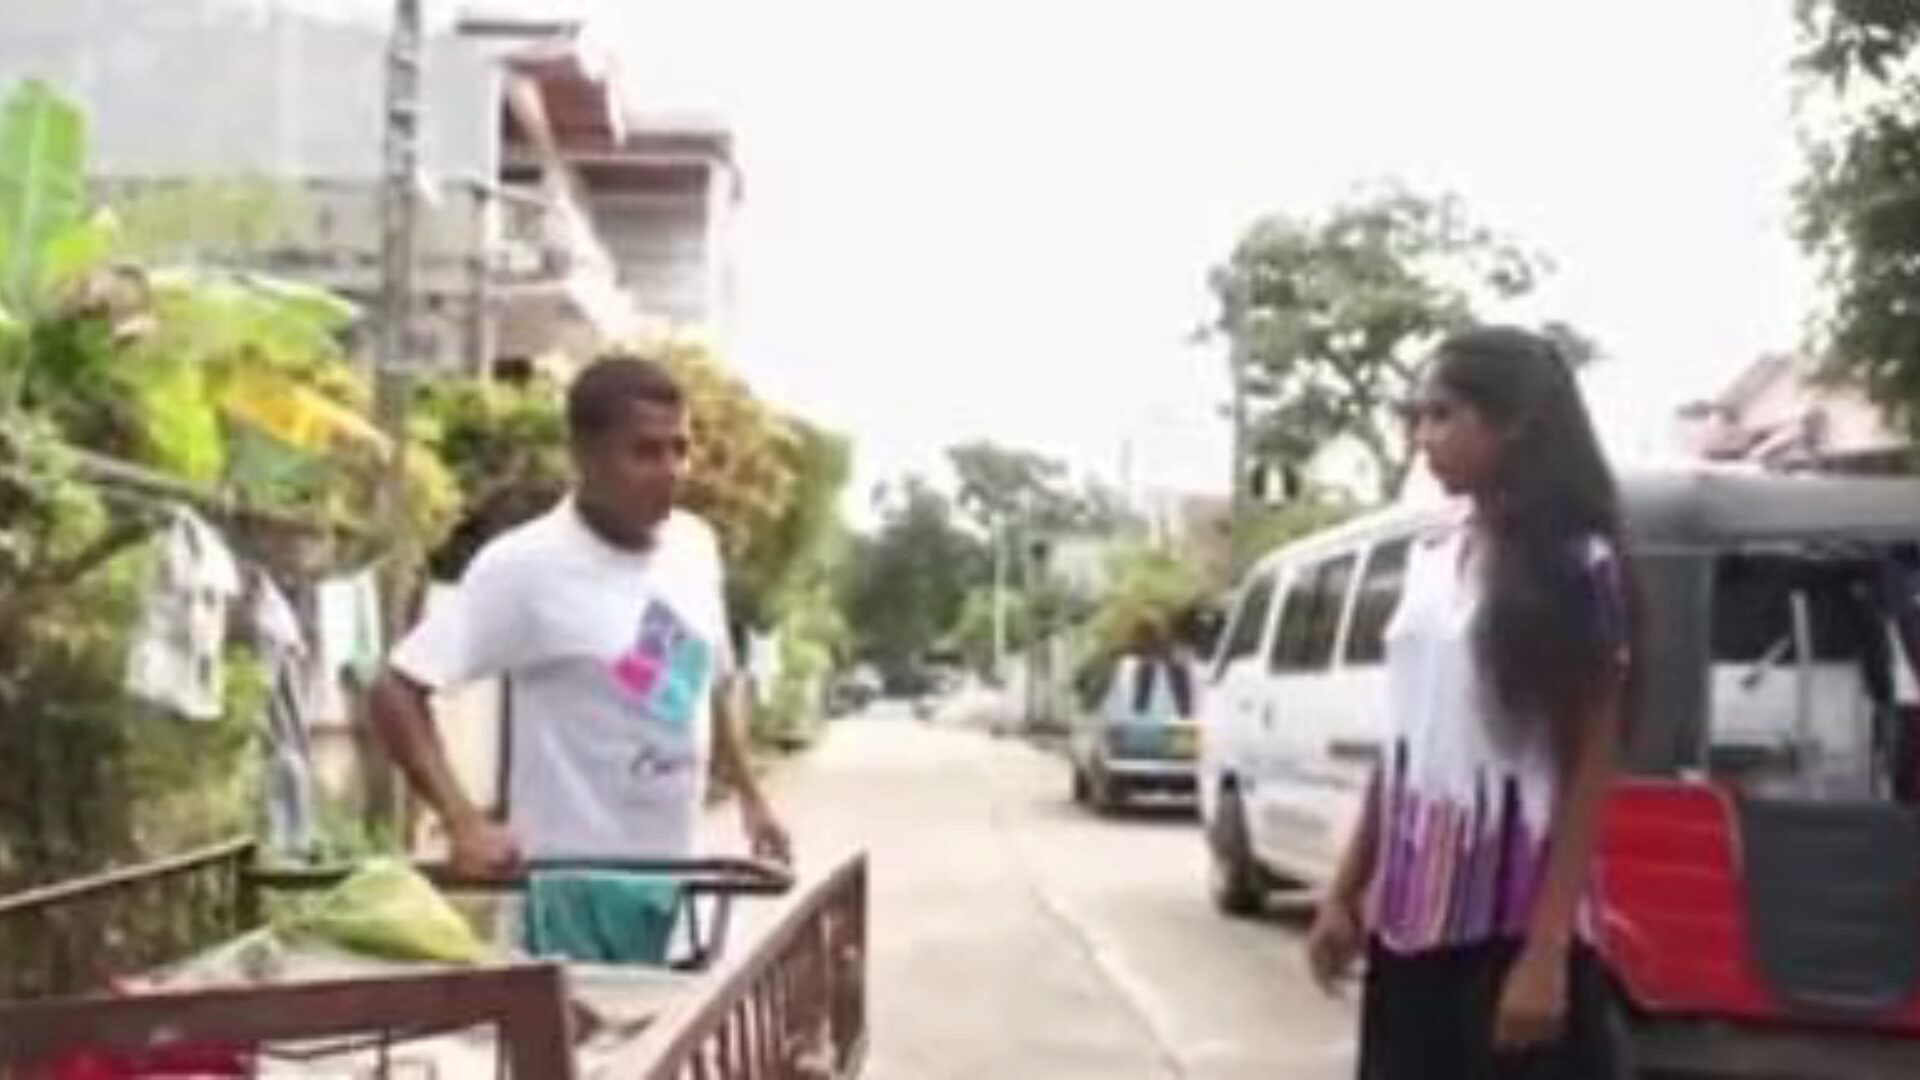 kama rasa: sri lankan & kissing porn video 93 - xhamster titta på kama rasa tube orgie filmscen gratis för alla på xhamster, med den bästa uppskattningen av asiatiska Sri Lanka, kyssar & smutsiga samtalporr avsnitt